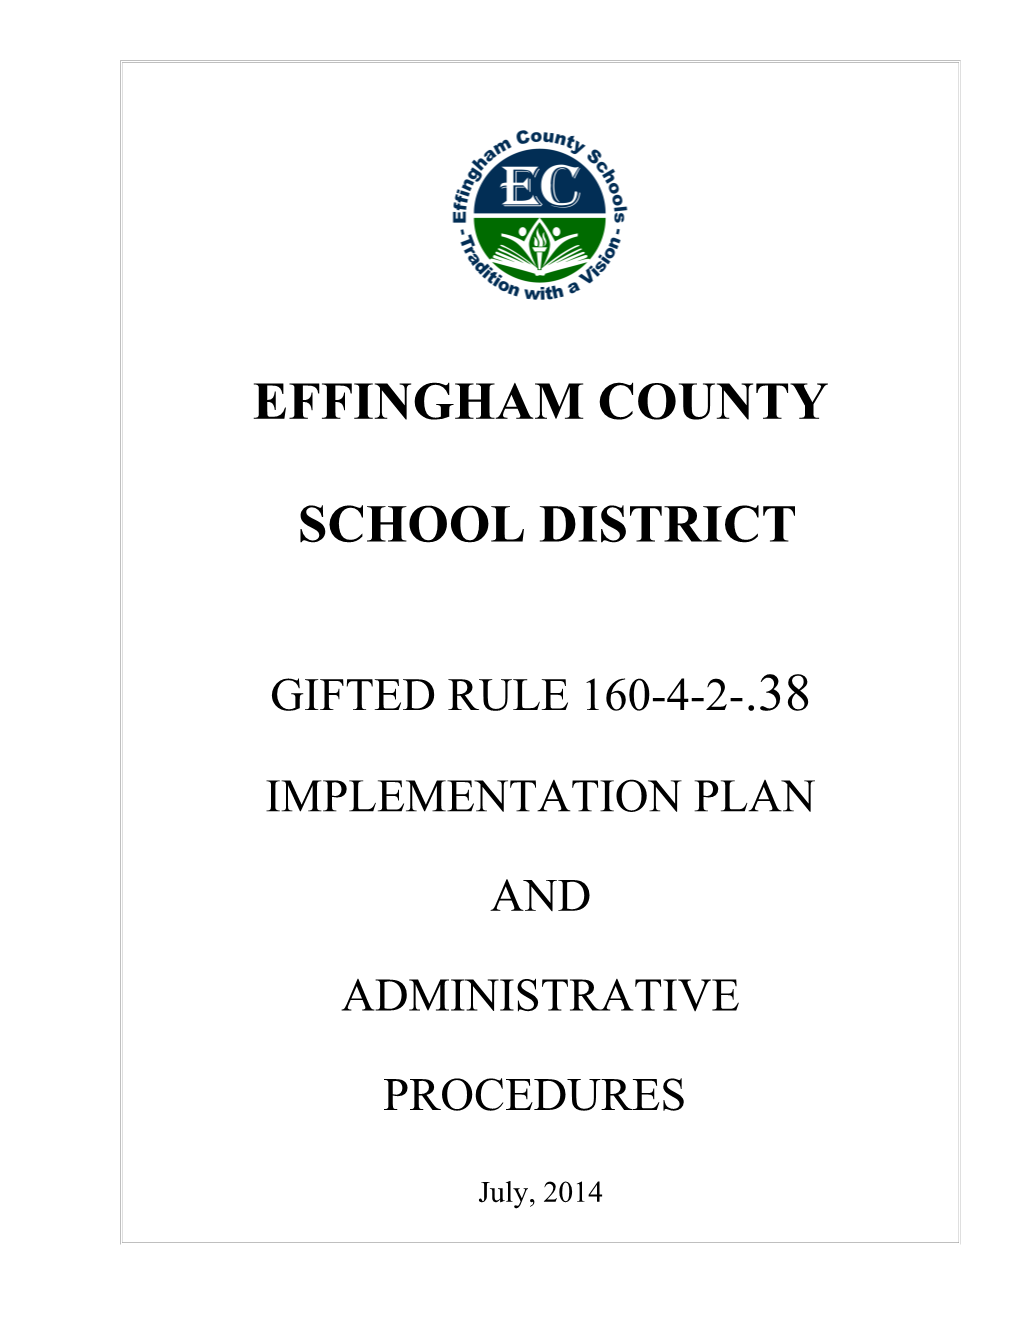 Effingham County